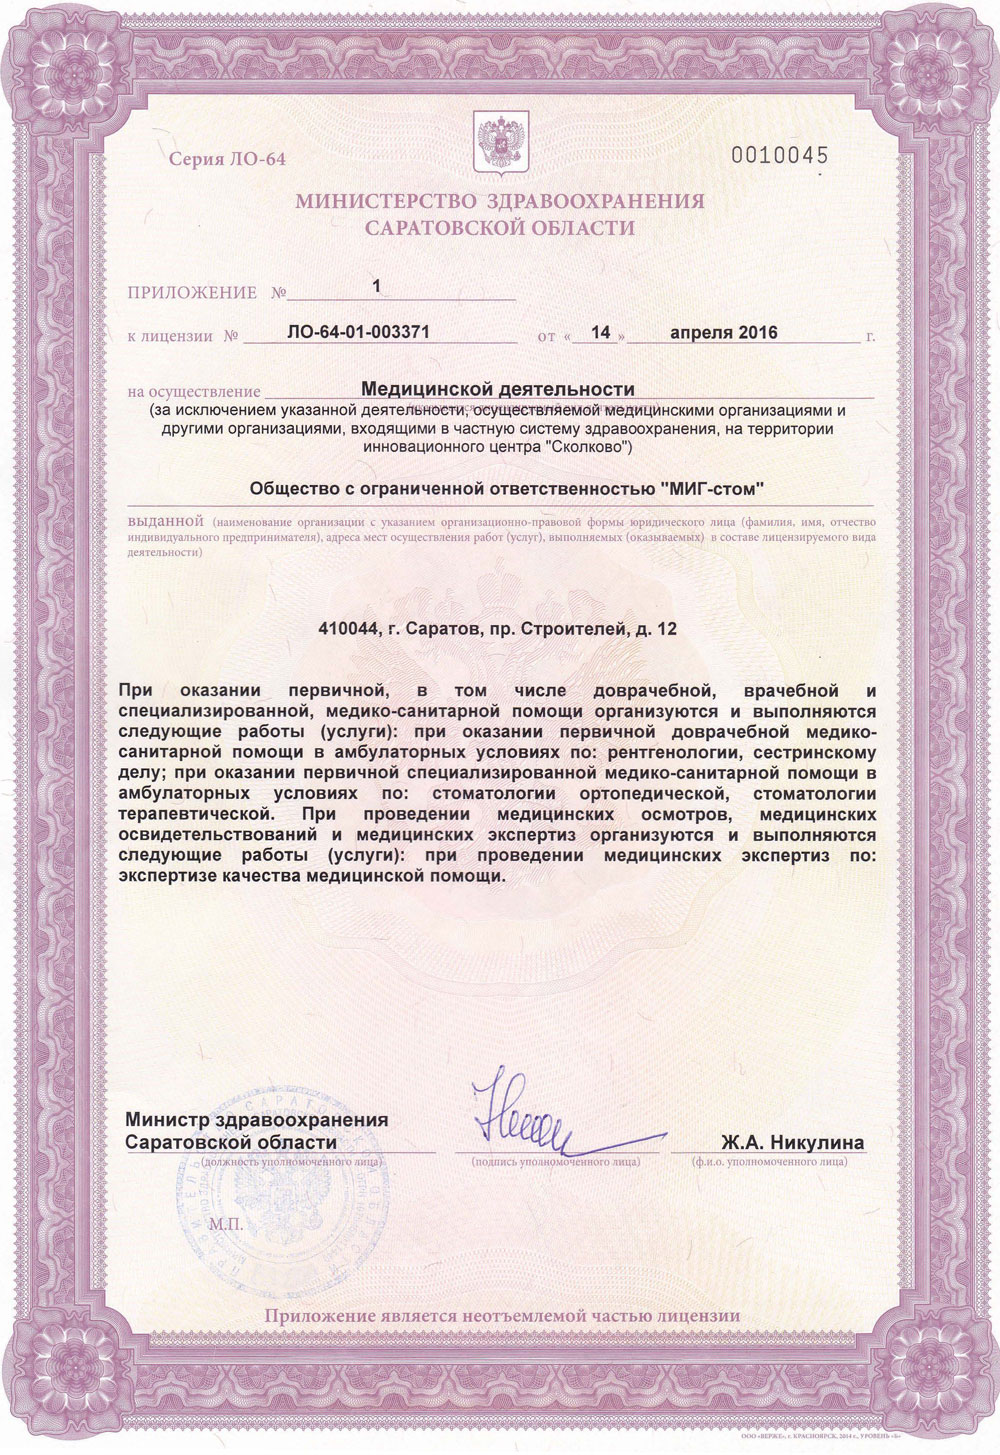 Лицензия №-ЛО-64-01-003371 от 14 апреля 2016 года. Приложение 1.